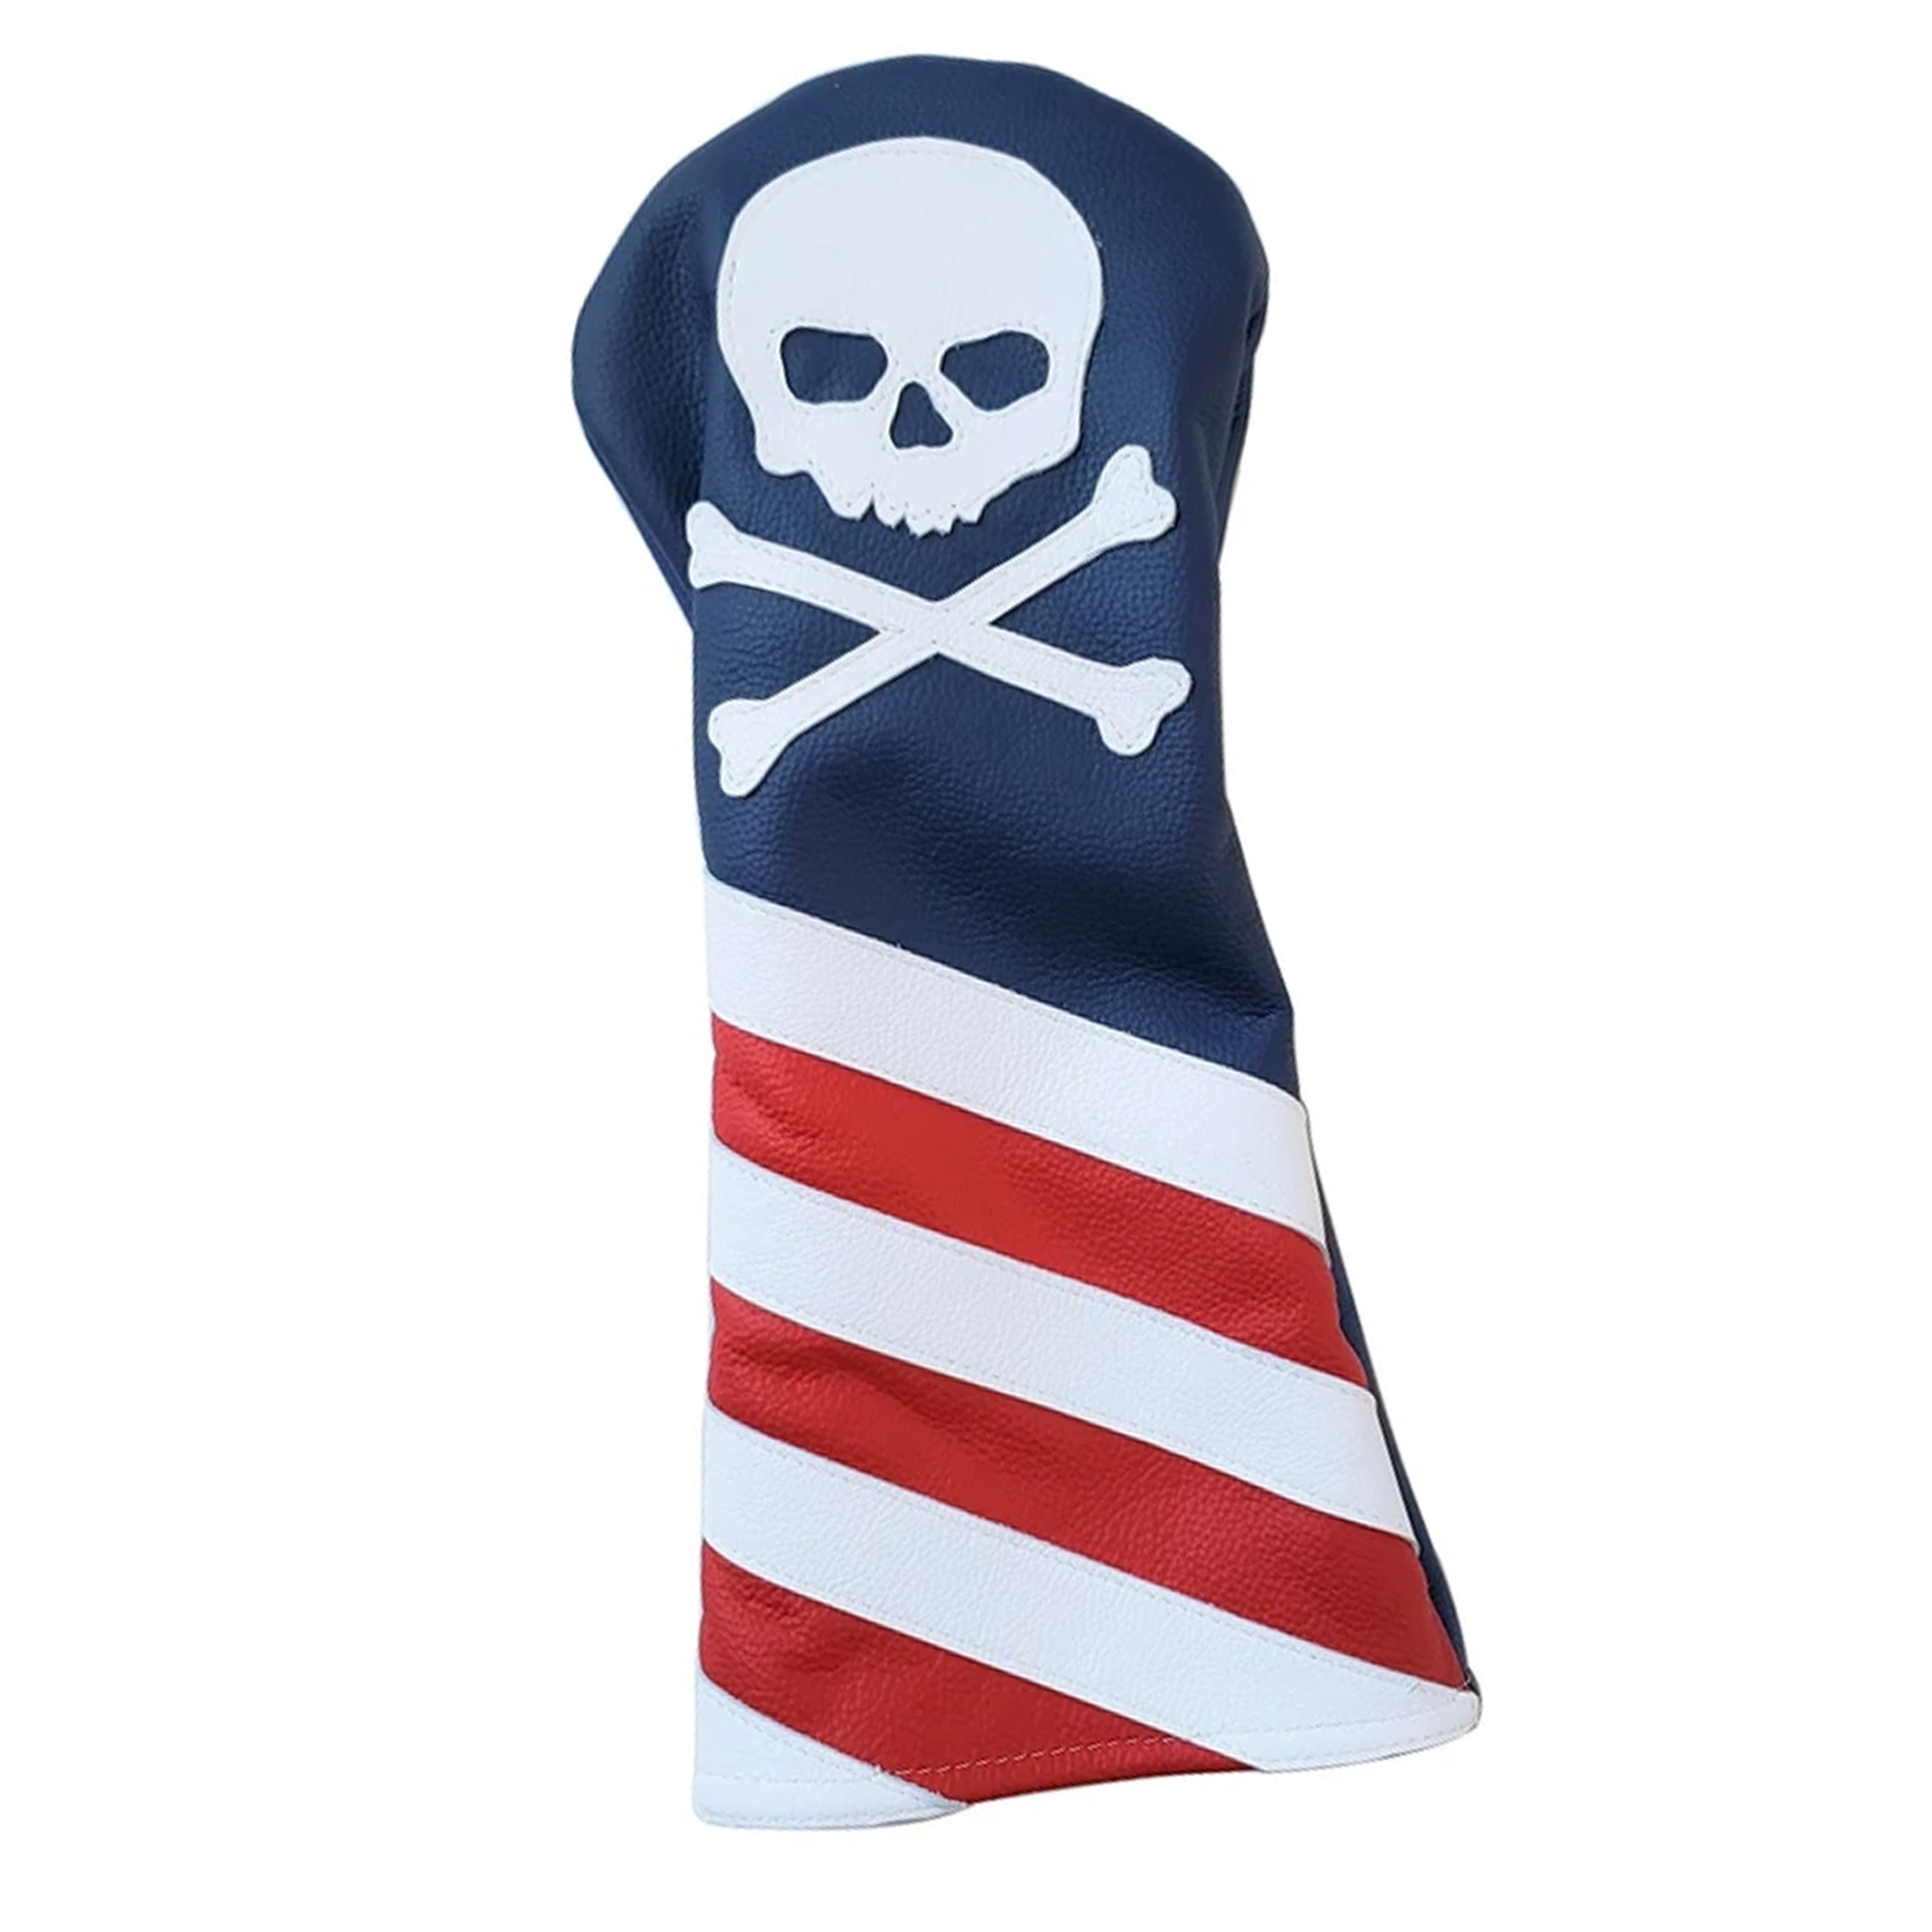 The USA Flag Skull & Bones Headcover - Robert Mark Golf